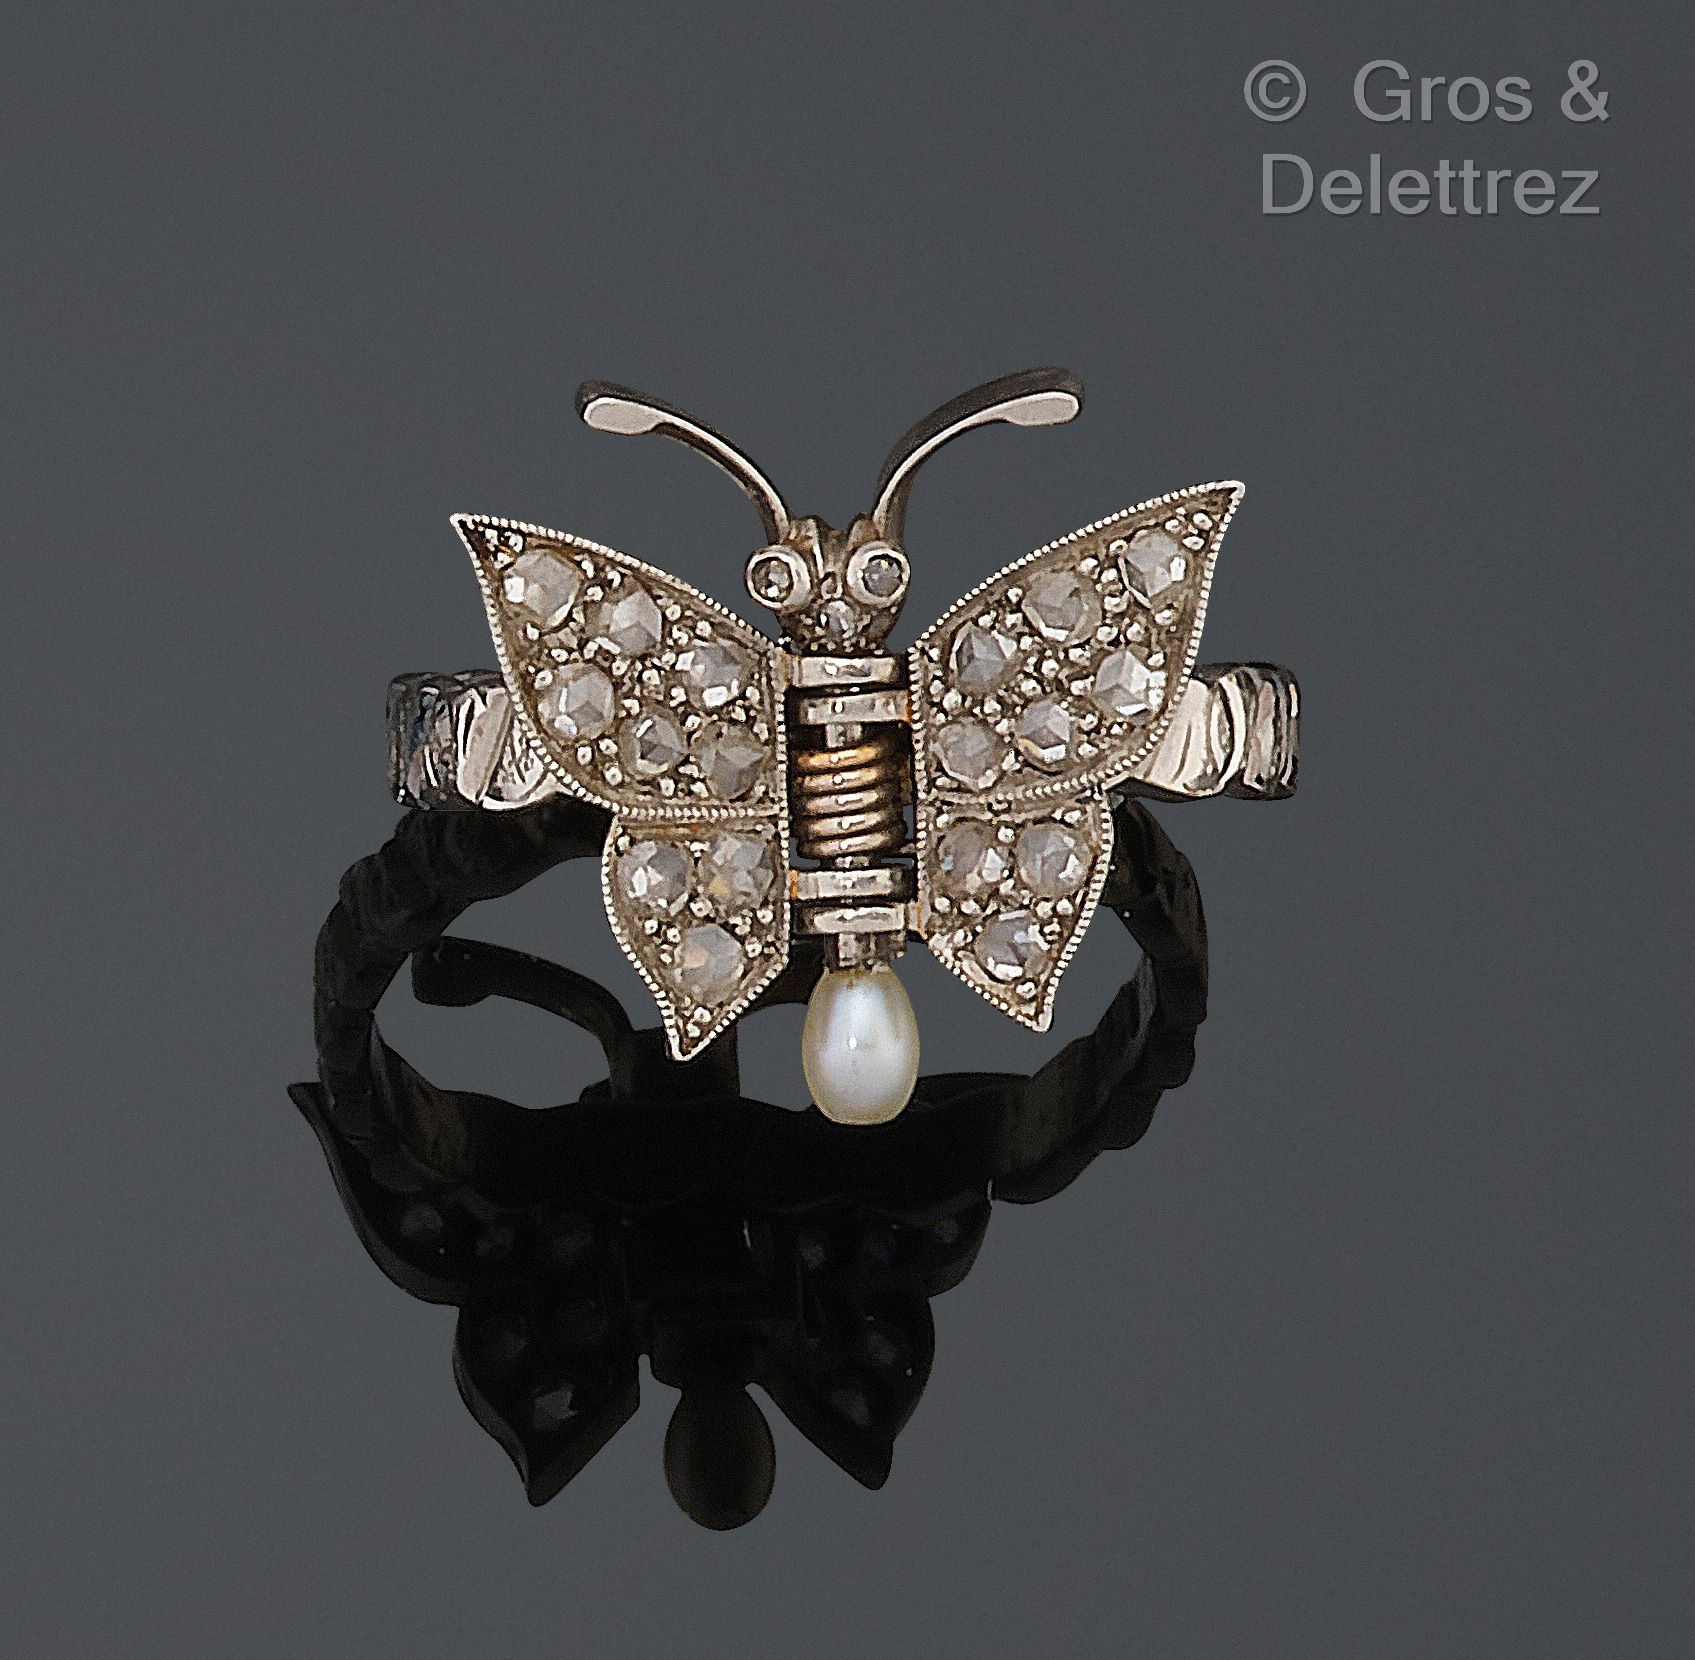 Null Motivo de mariposa retomado en sortija de oro blanco de 750 milésimas, enga&hellip;